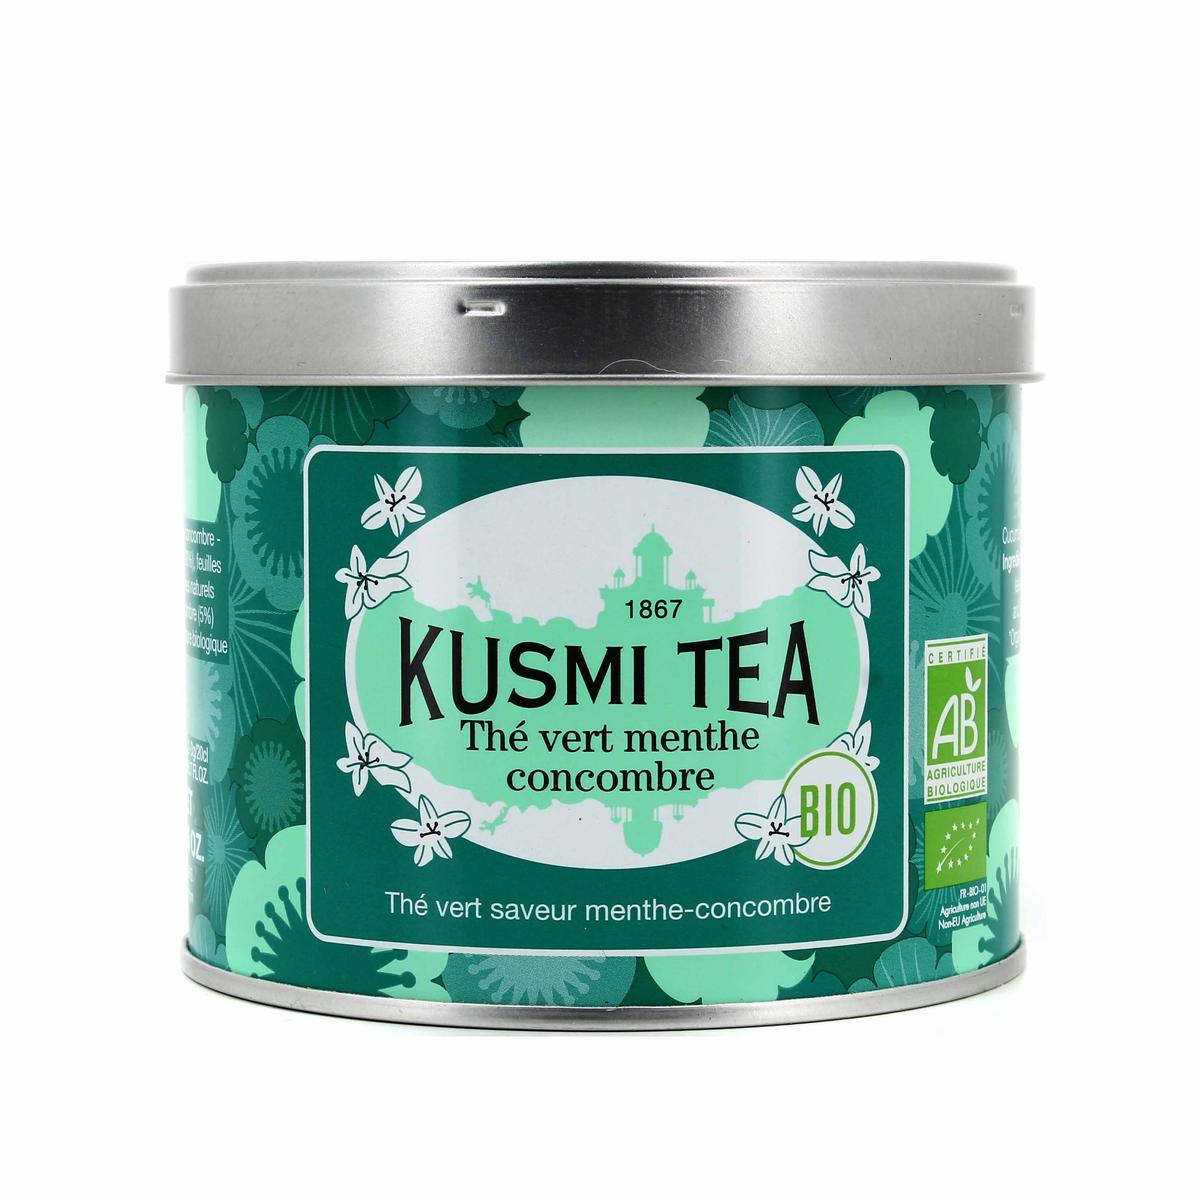 Achat / Vente Promotion Kusmi Tea Thé vert menthe concombre bio, 100g